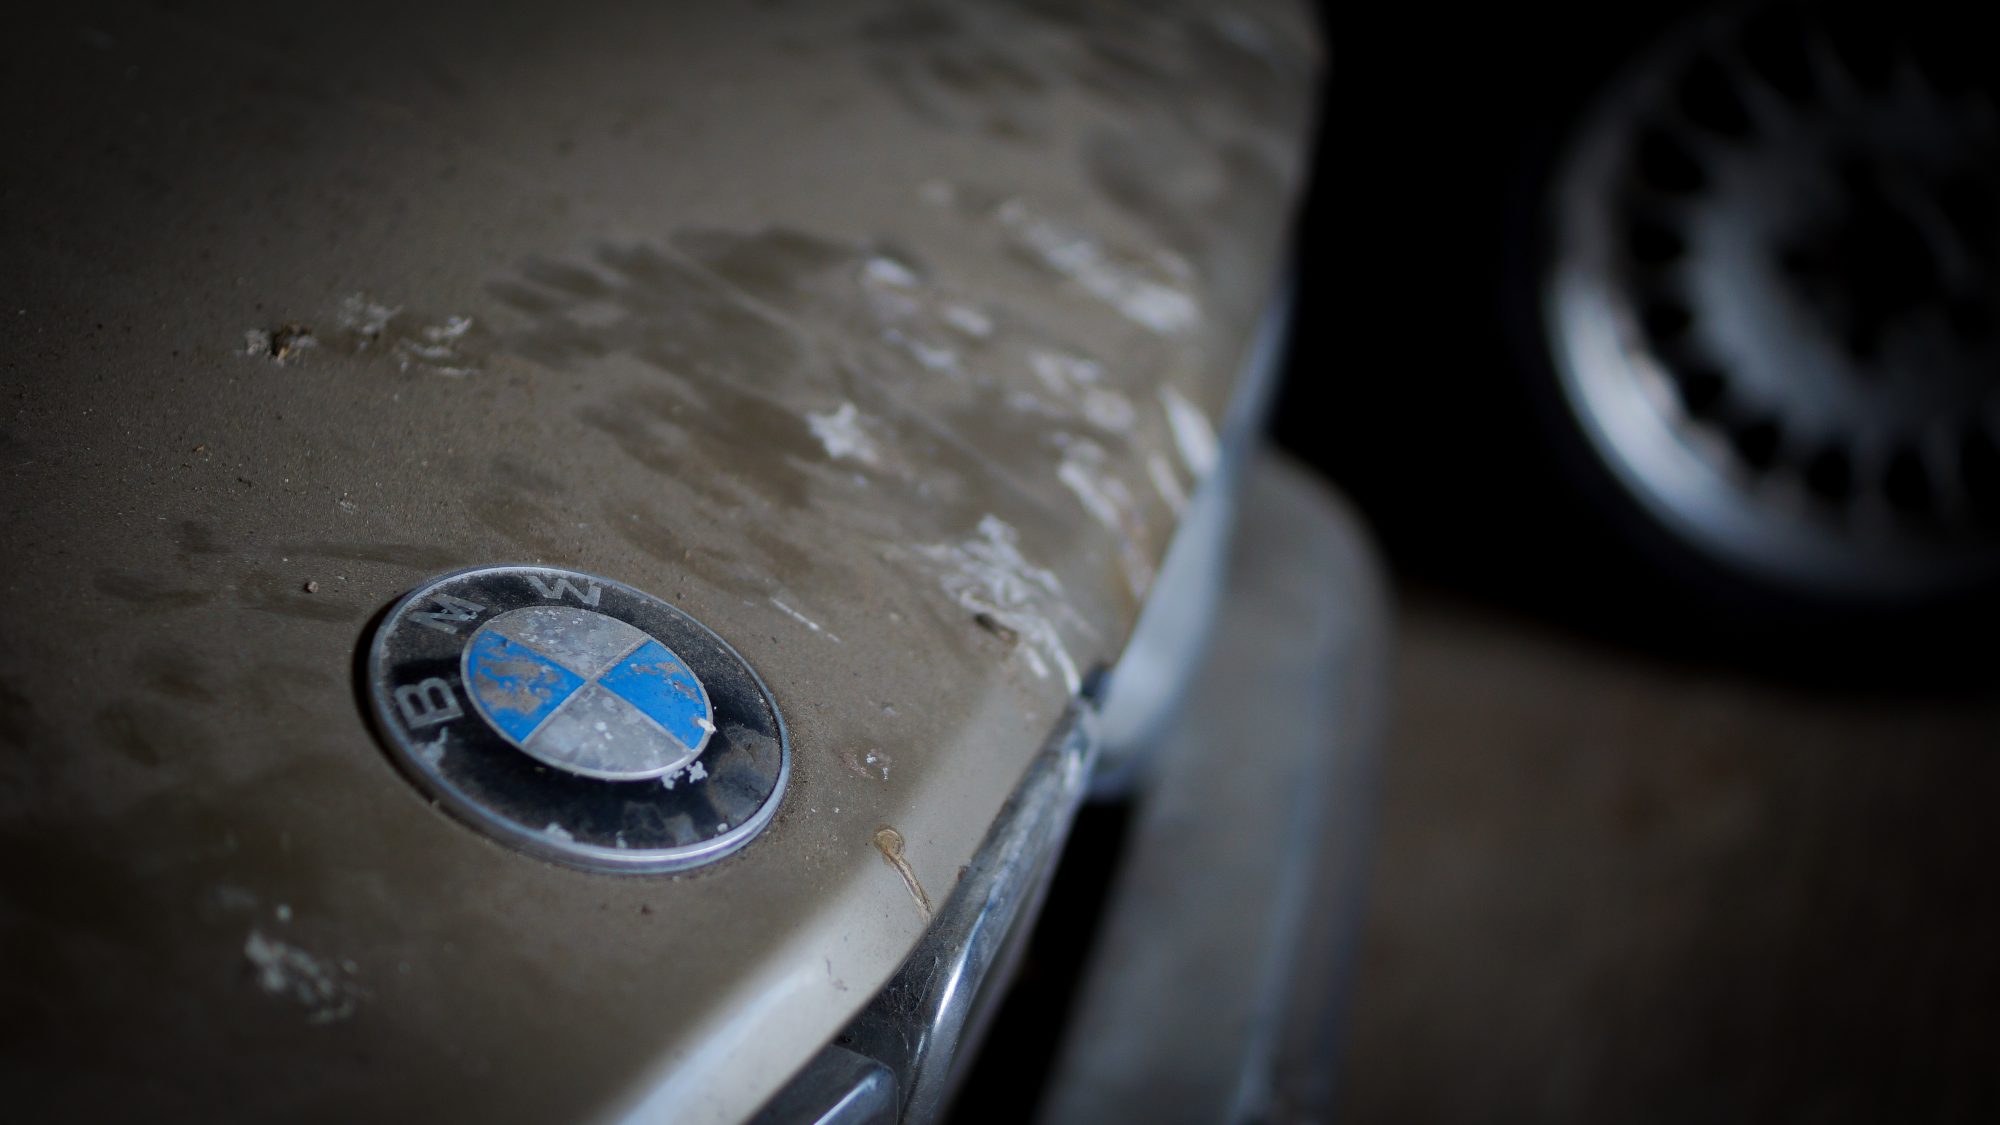 BMW, BMW E28, 520, 525e, 528i, M535i, M5, classic BMW, Barn find, BMW badge